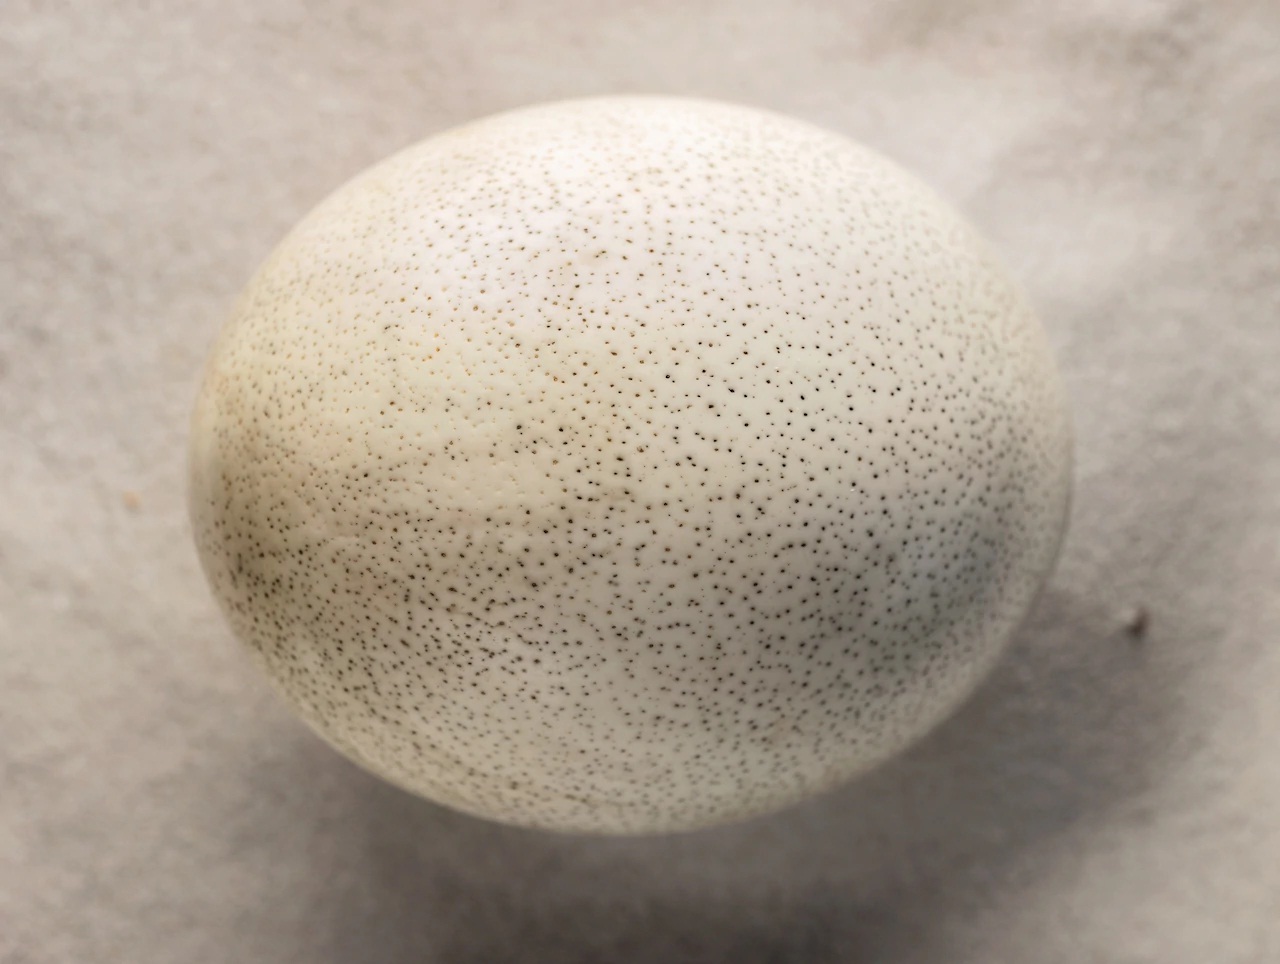 Những chấm lõm li ti bên ngoài trứng đà điểu Nam Phi. Nặng hơn 3 pao mỗi trứng, trứng đà điểu là trứng to nhất do chim còn sống sinh ra. Chim voi tuyệt chủng ở Madagascar là loài có trứng lớn nhất trong số các loài động vật có xương sống, mỗi trứng có thể tích bằng 160 quả trứng gà.